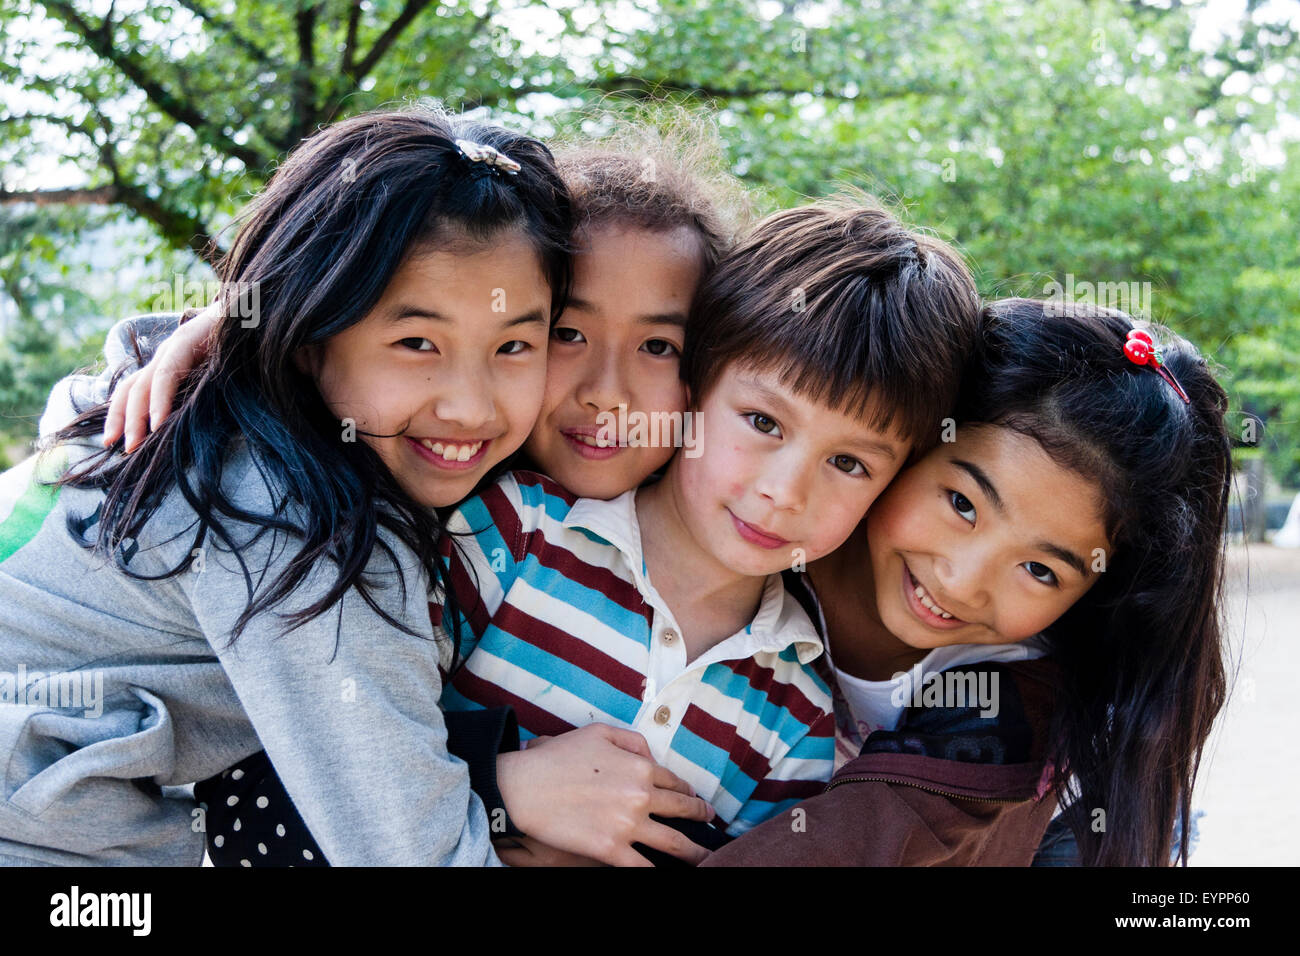 Fila di quattro bambini sorridenti, 7-9 anni, testa e spalle, le facce rivolte viewer con contatto visivo. 3 ragazze giapponesi e un ragazzo caucasico. Avvolgente. Foto Stock